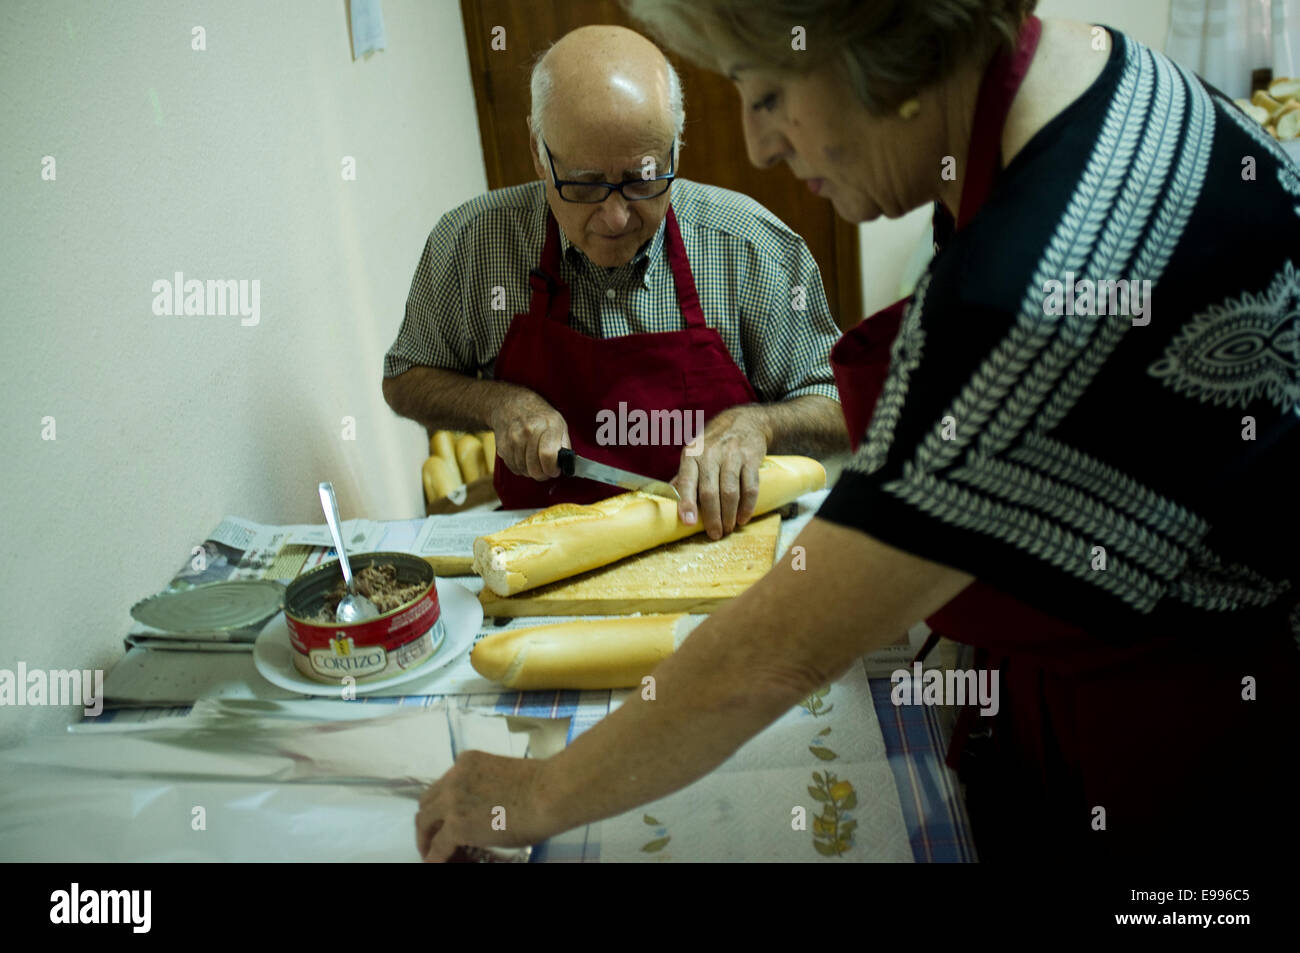 Les immigrants temporaires viennent à Valdepeñas, Ciudad Real, Espagne, de travailler en vendanges. Ils vivent dans de mauvaises conditions et rendez-co Banque D'Images